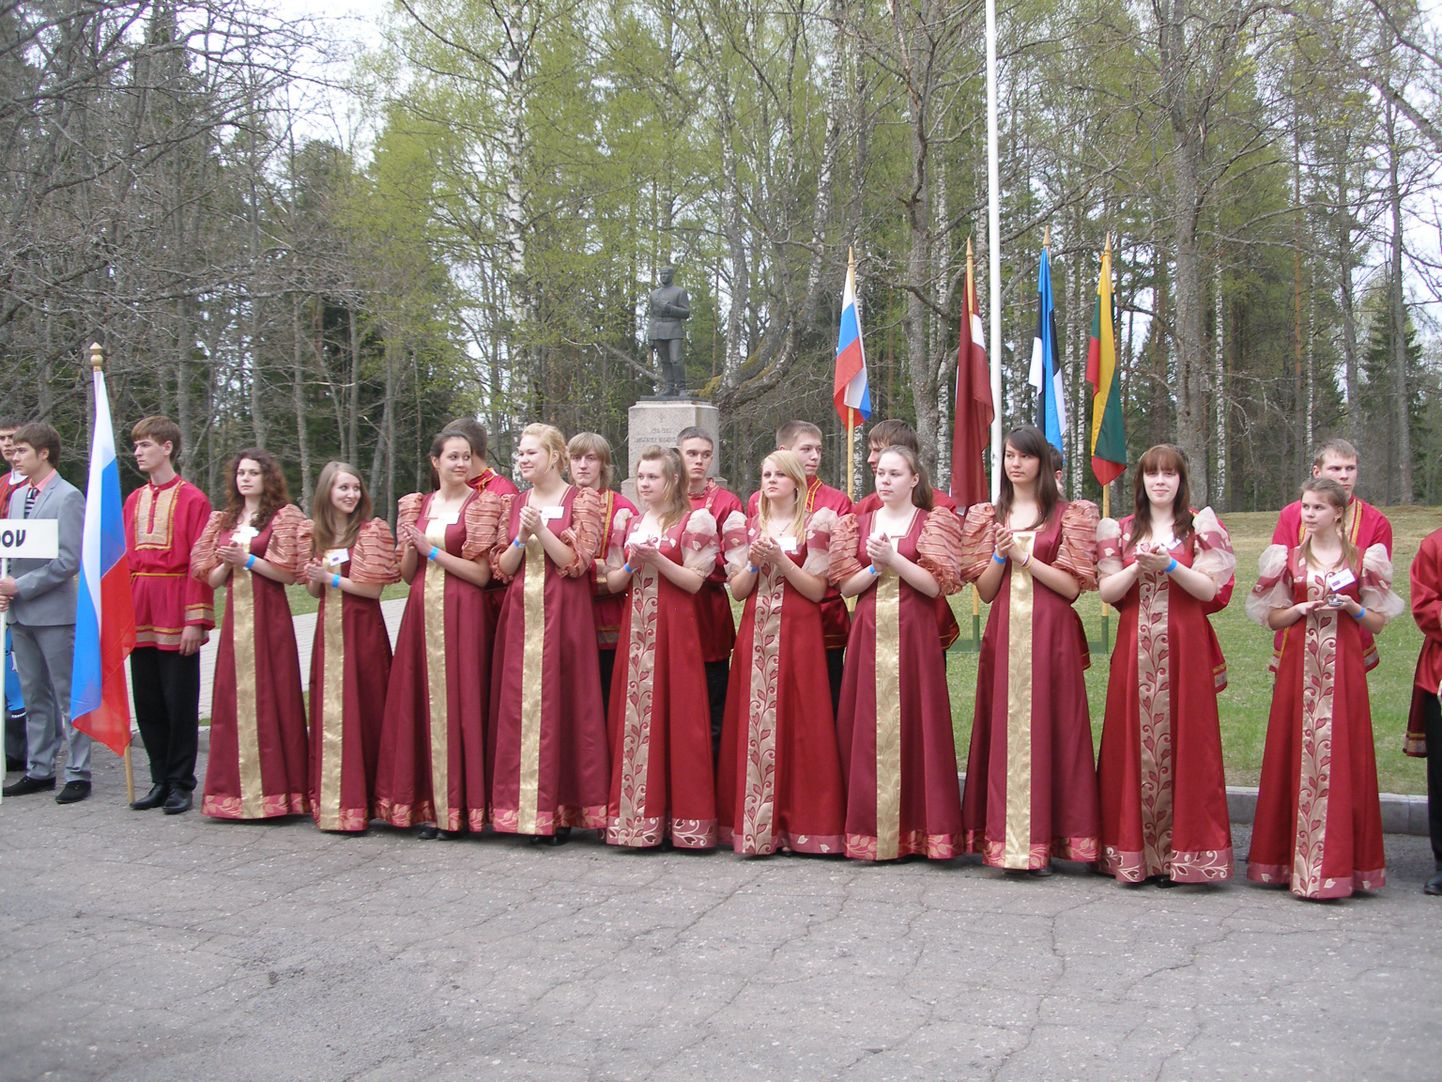 Festival toob nädalavahetuseks Tõrva koolinoori Lätist, Leedust ja Venemaalt. Pildil 2011. aastal festivalil osalenud noored Venemaalt Gdovist.